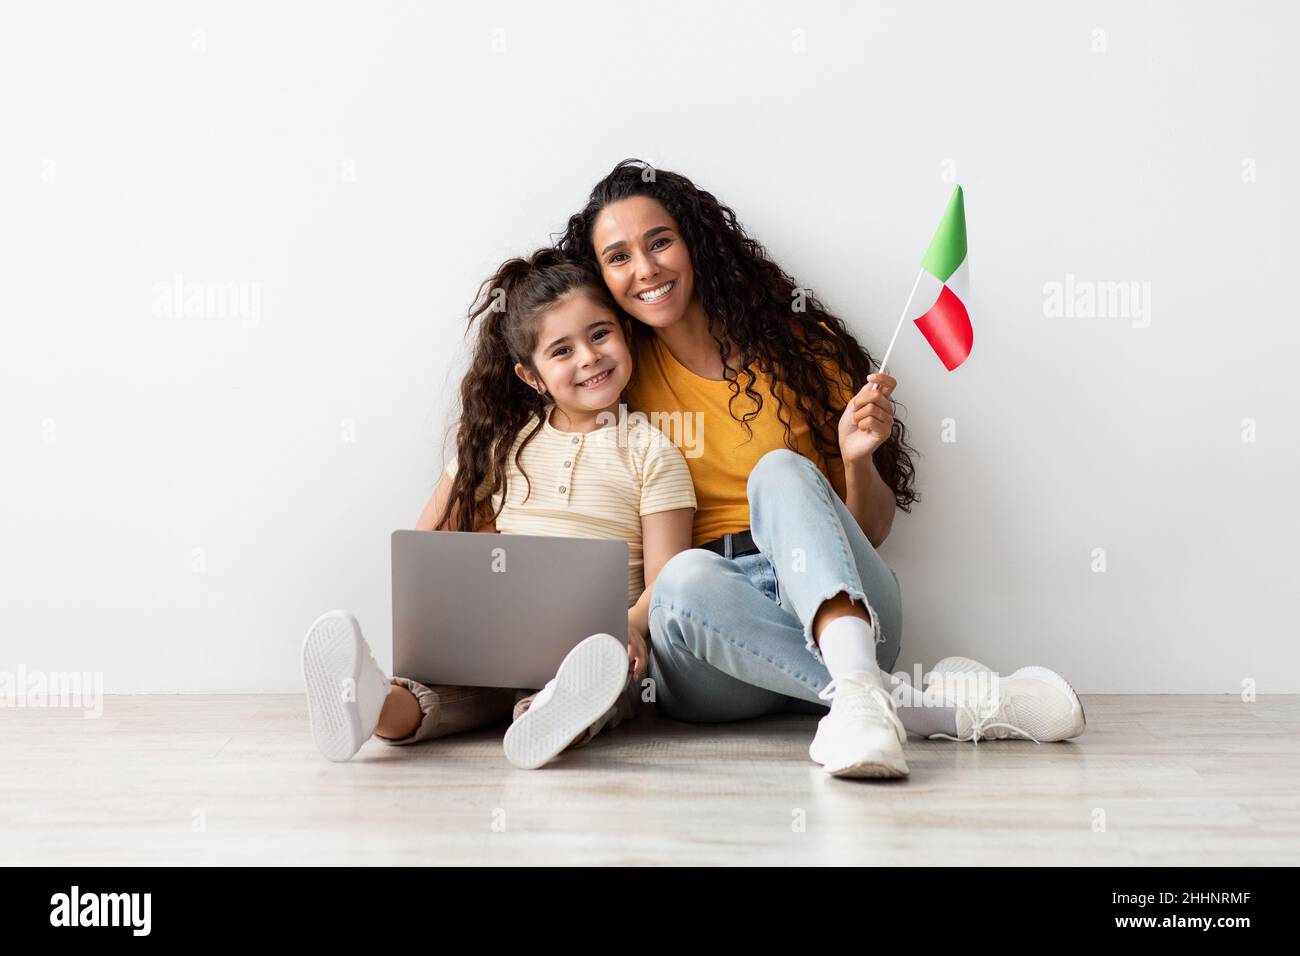 Ritratto di madre araba e bambina con laptop e bandiera italiana Foto Stock